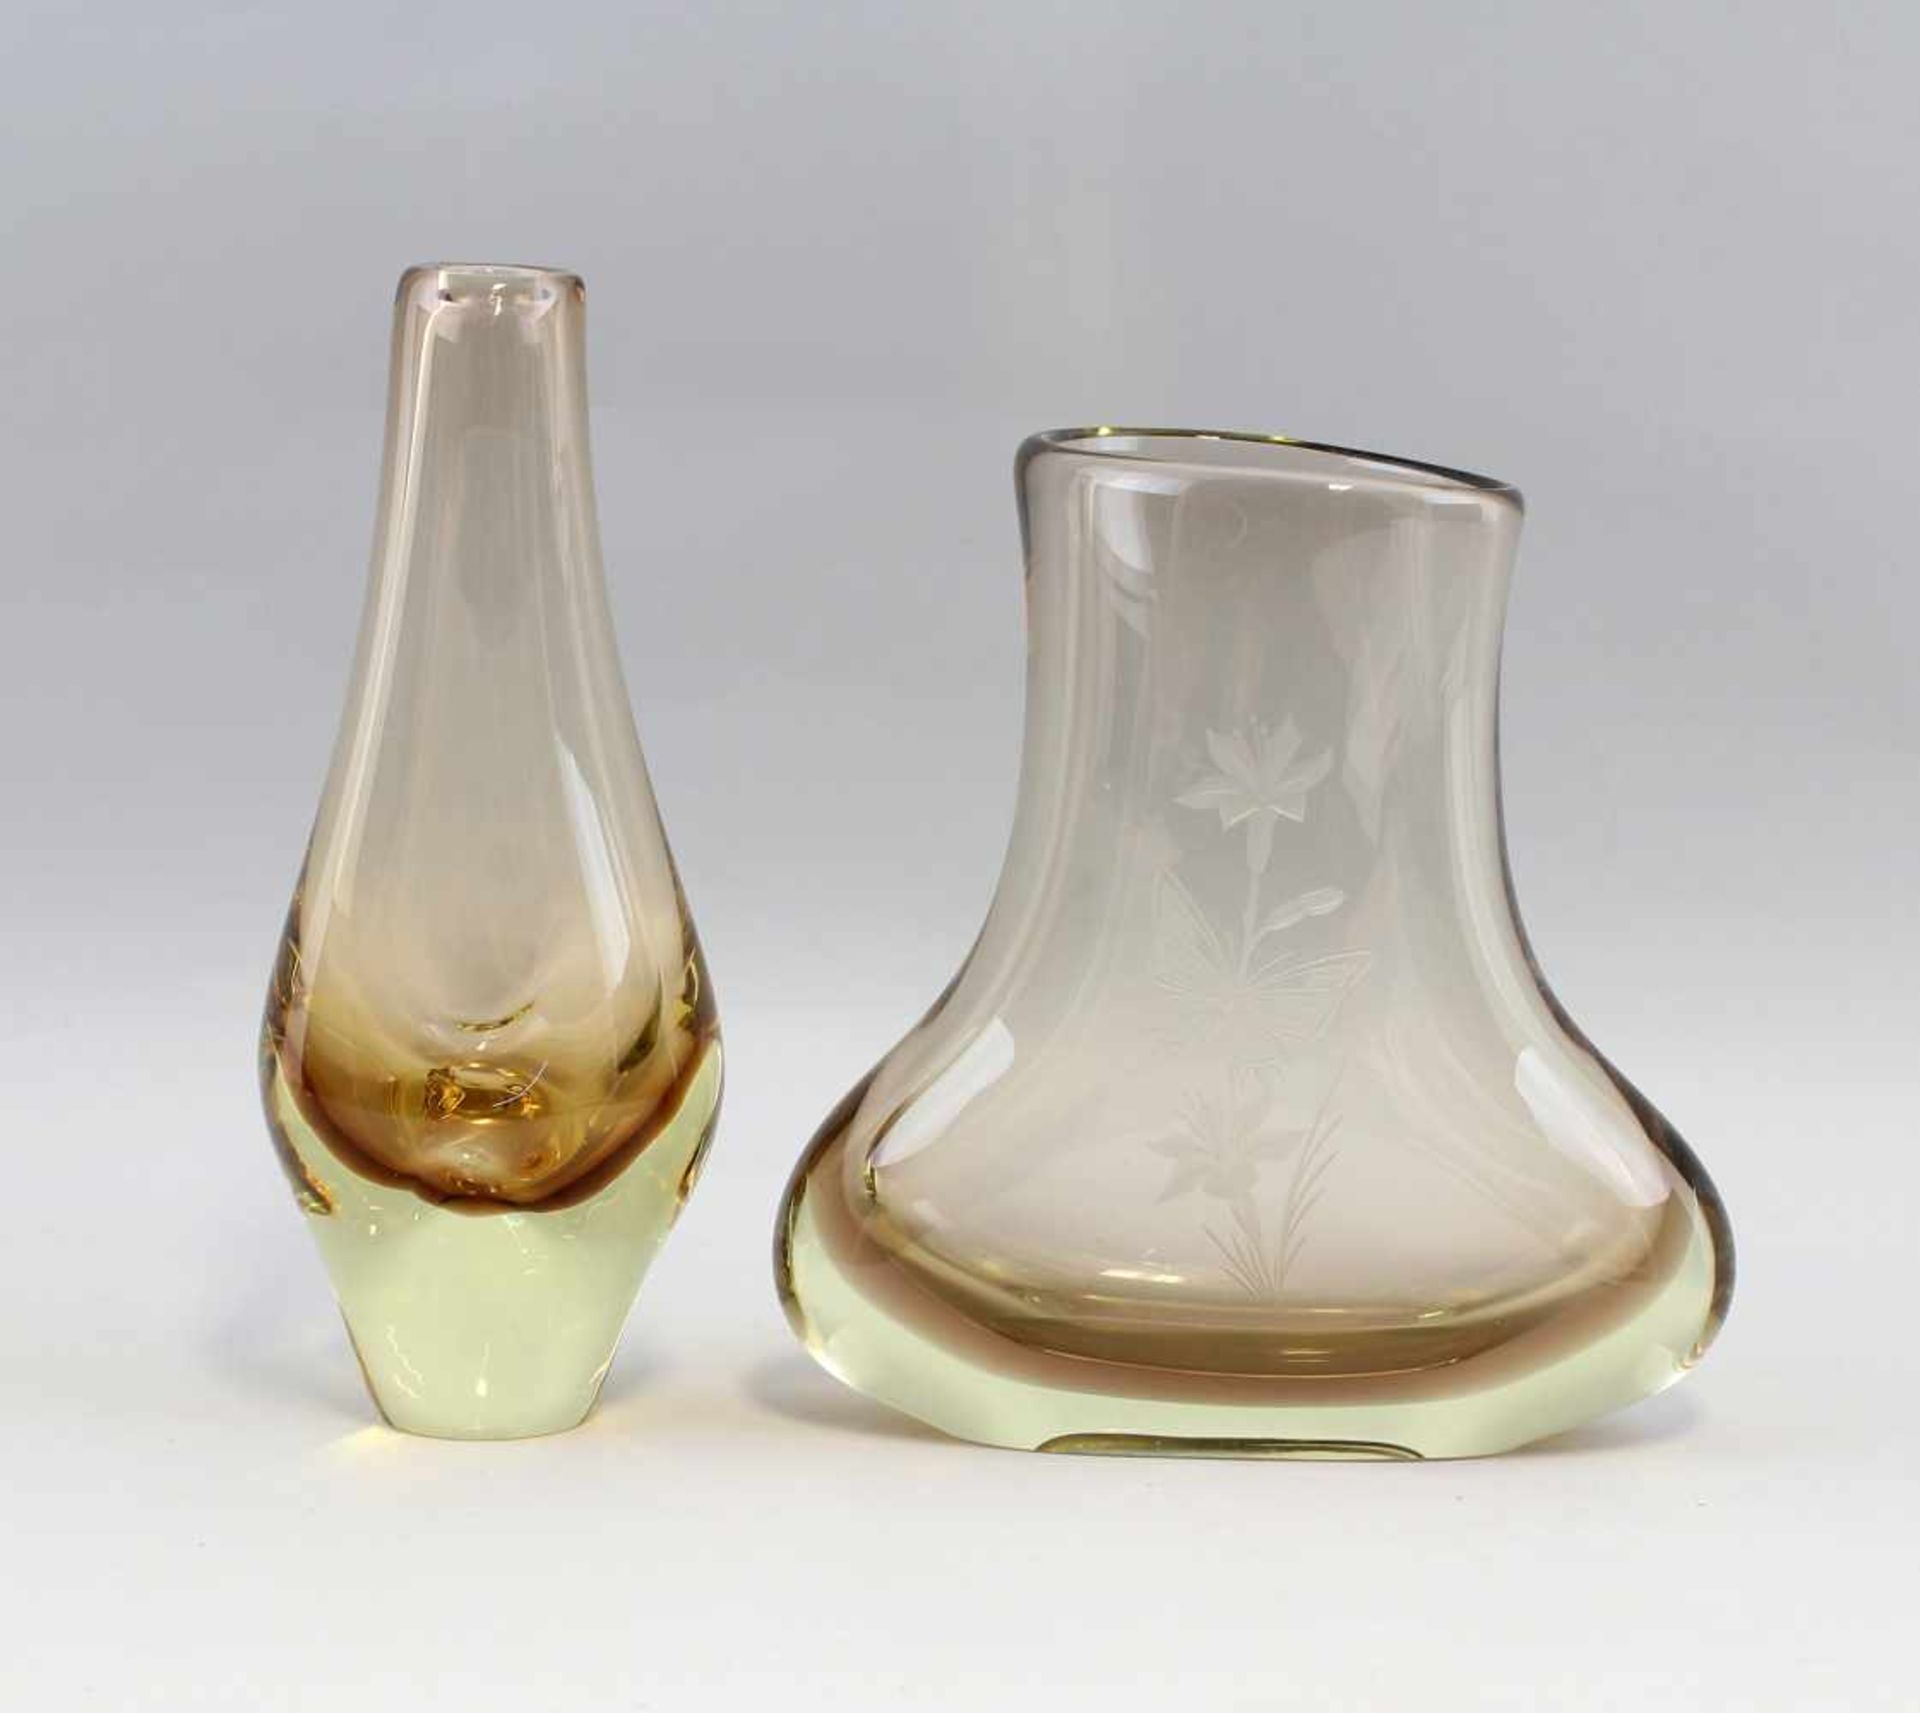 2 Vasen Muranodickes farbloses Glas braun unterfangen, handbeschliffen, plan geschliffener Boden,